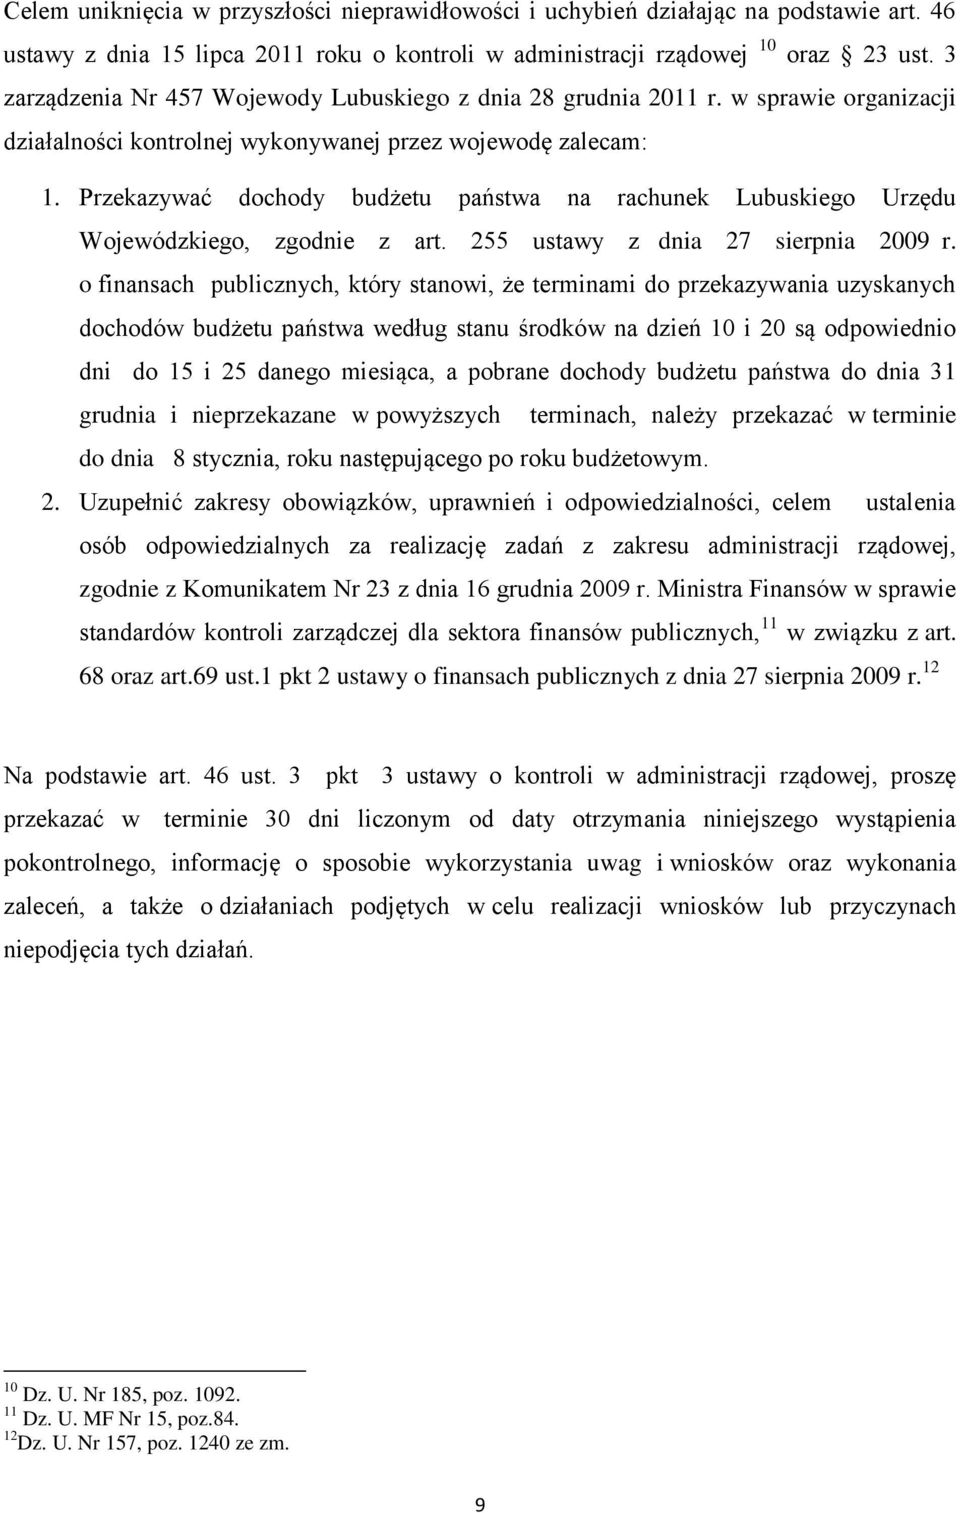 Przekazywać dochody budżetu państwa na rachunek Lubuskiego Urzędu Wojewódzkiego, zgodnie z art. 255 ustawy z dnia 27 sierpnia 2009 r.